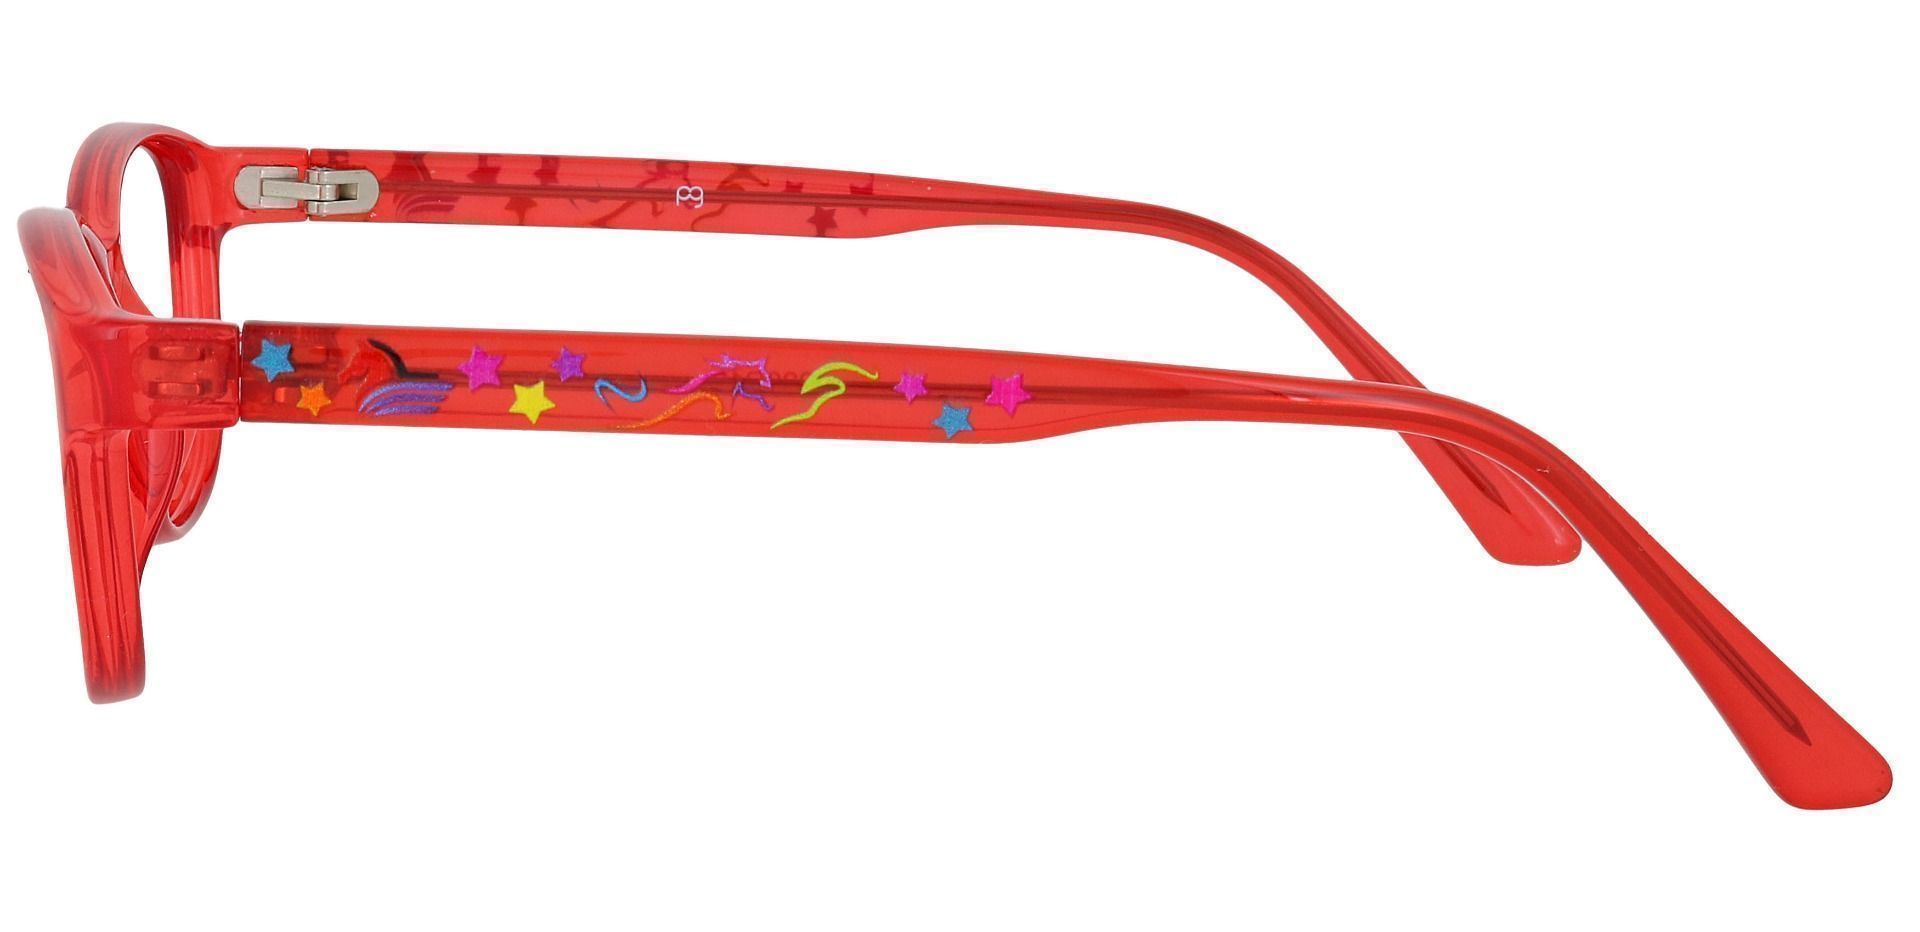 Alpine Oval Prescription Glasses - Red